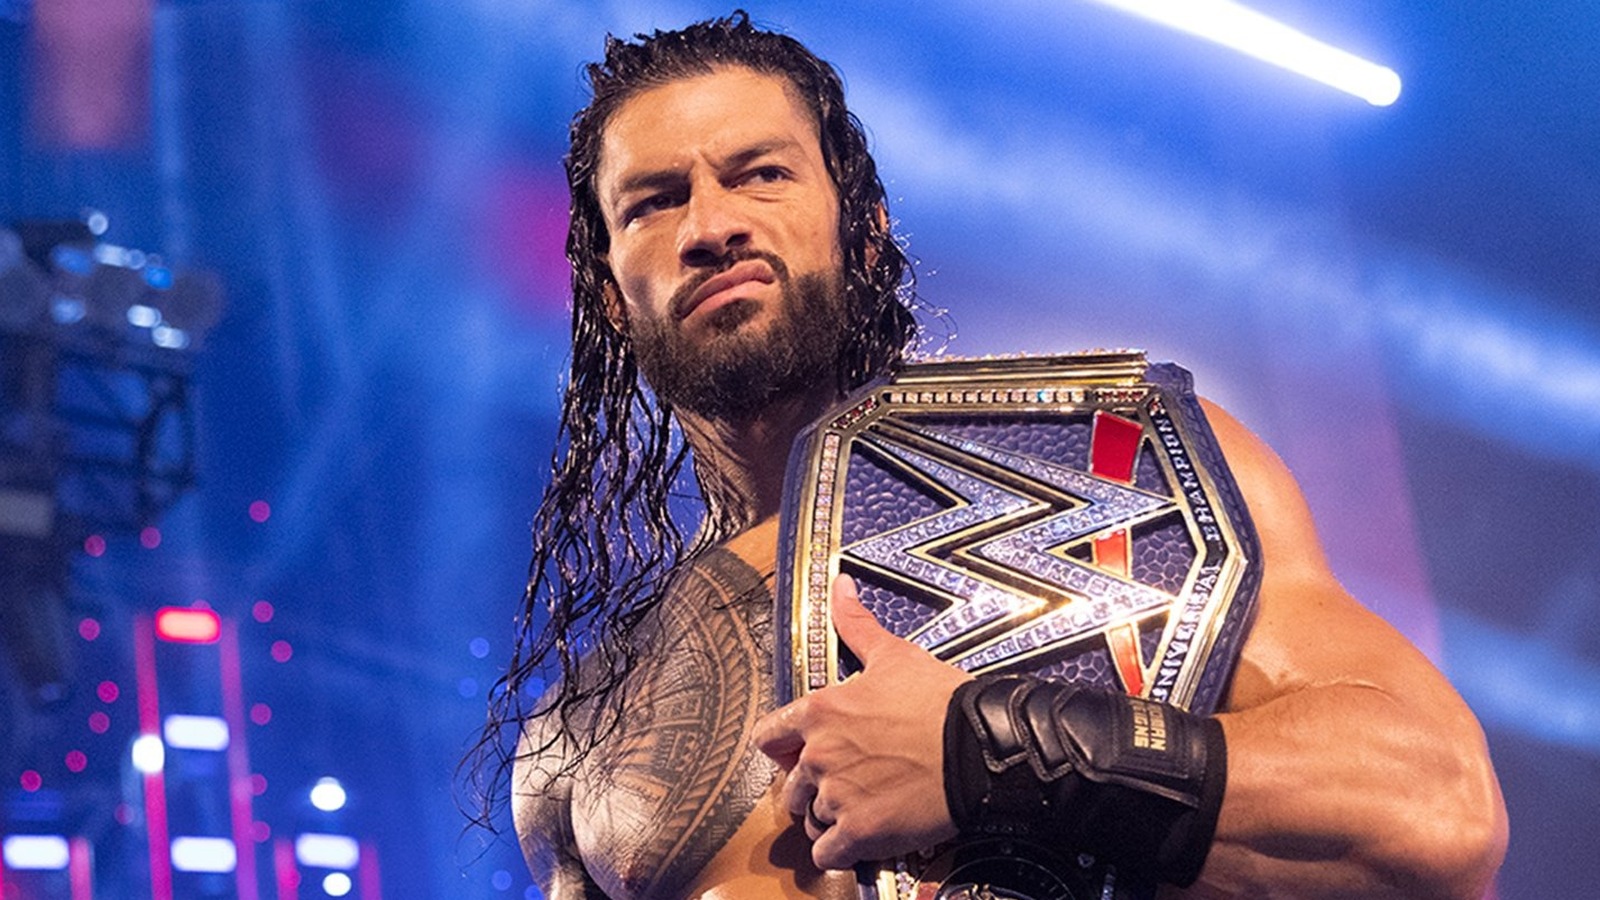 Detalles sobre el acuerdo confirmado para que WWE SmackDown deje Fox y regrese al cable